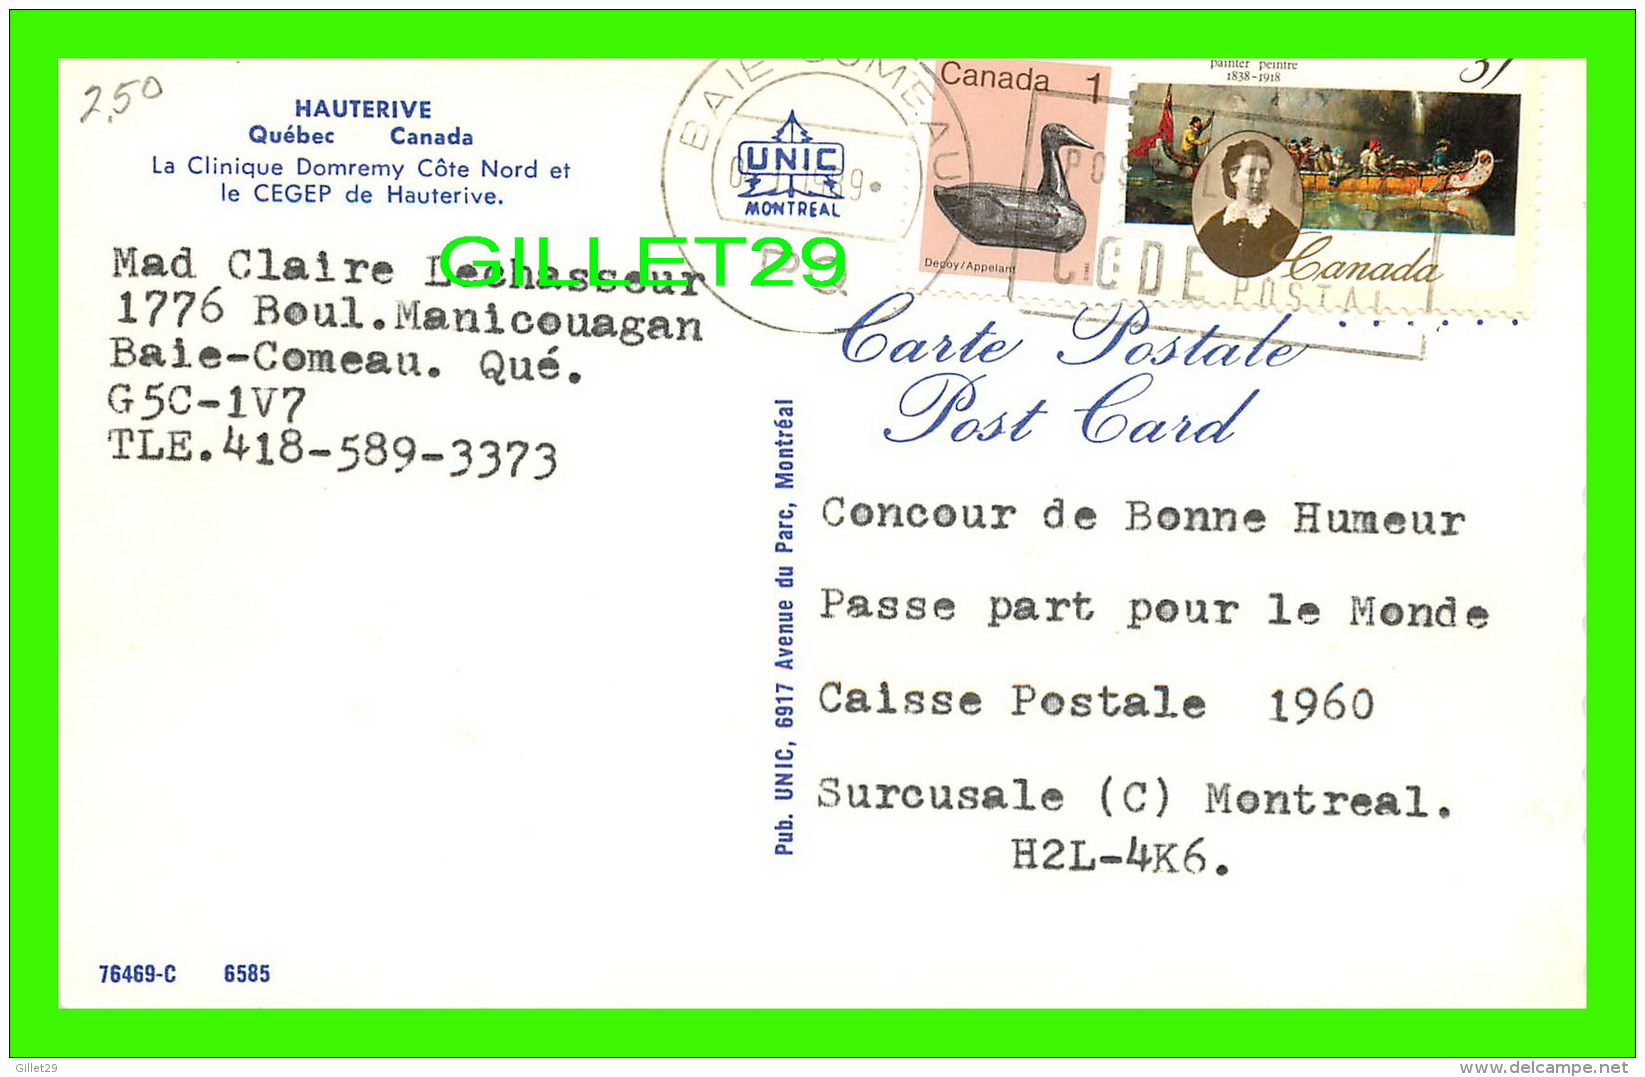 HAUTERIVE, QUÉBEC - LA CLINIQUE DOMREMY CÔTE NORD & CEGEP DE HAUTERIVE - CIRCULÉE EN 1989 - UNIC - - Saguenay